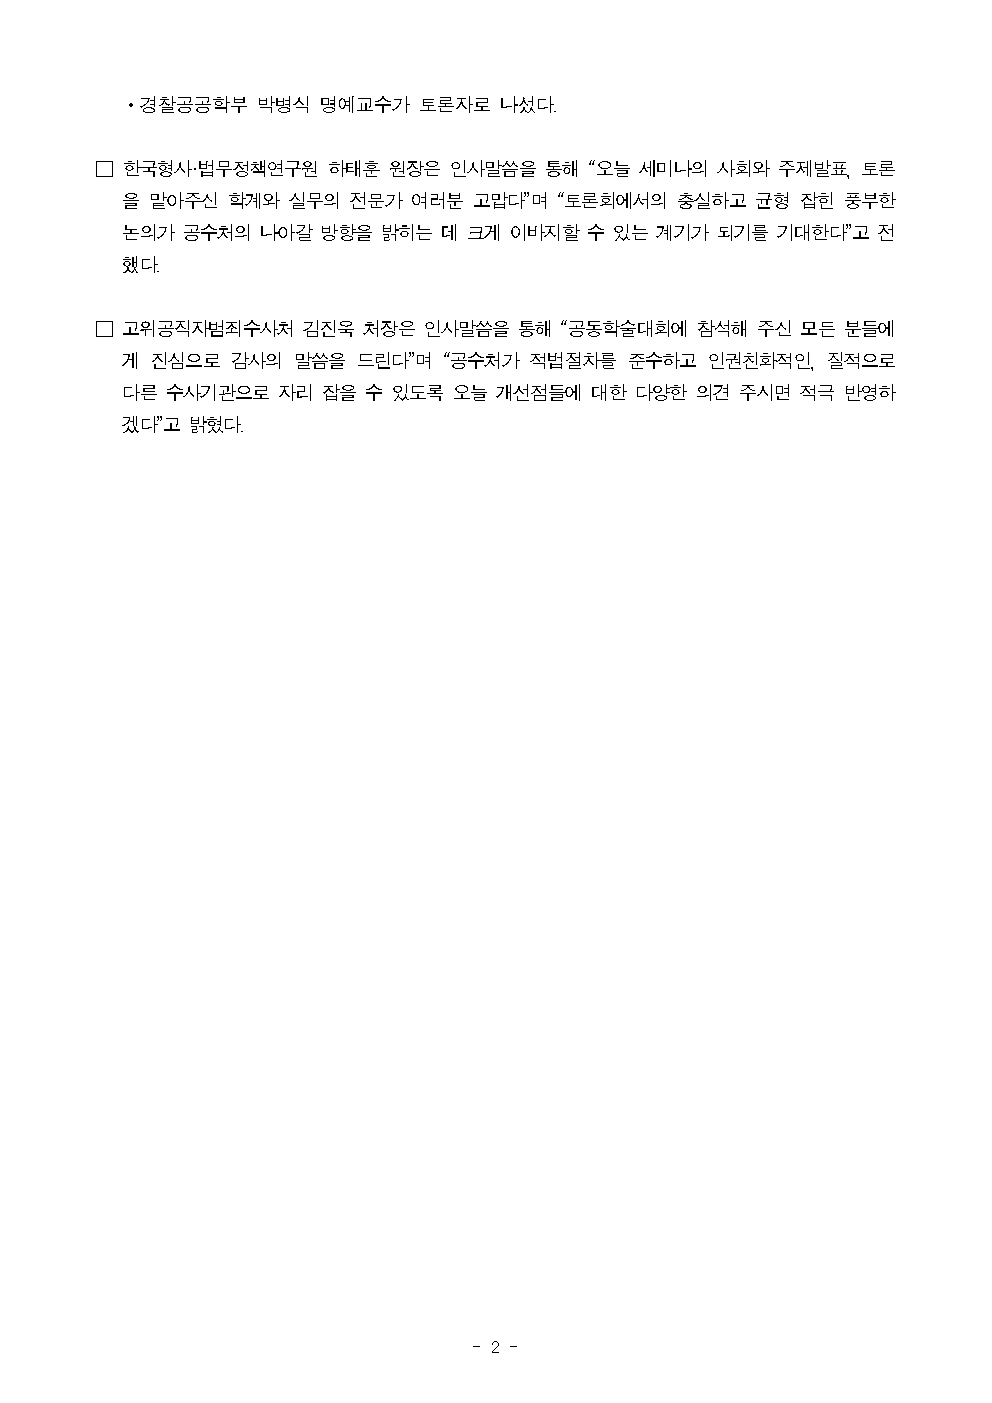 위:한국형사·법무정책연구원 하태훈 원장, 아래:고위공직자범죄수사처 김진욱 처장